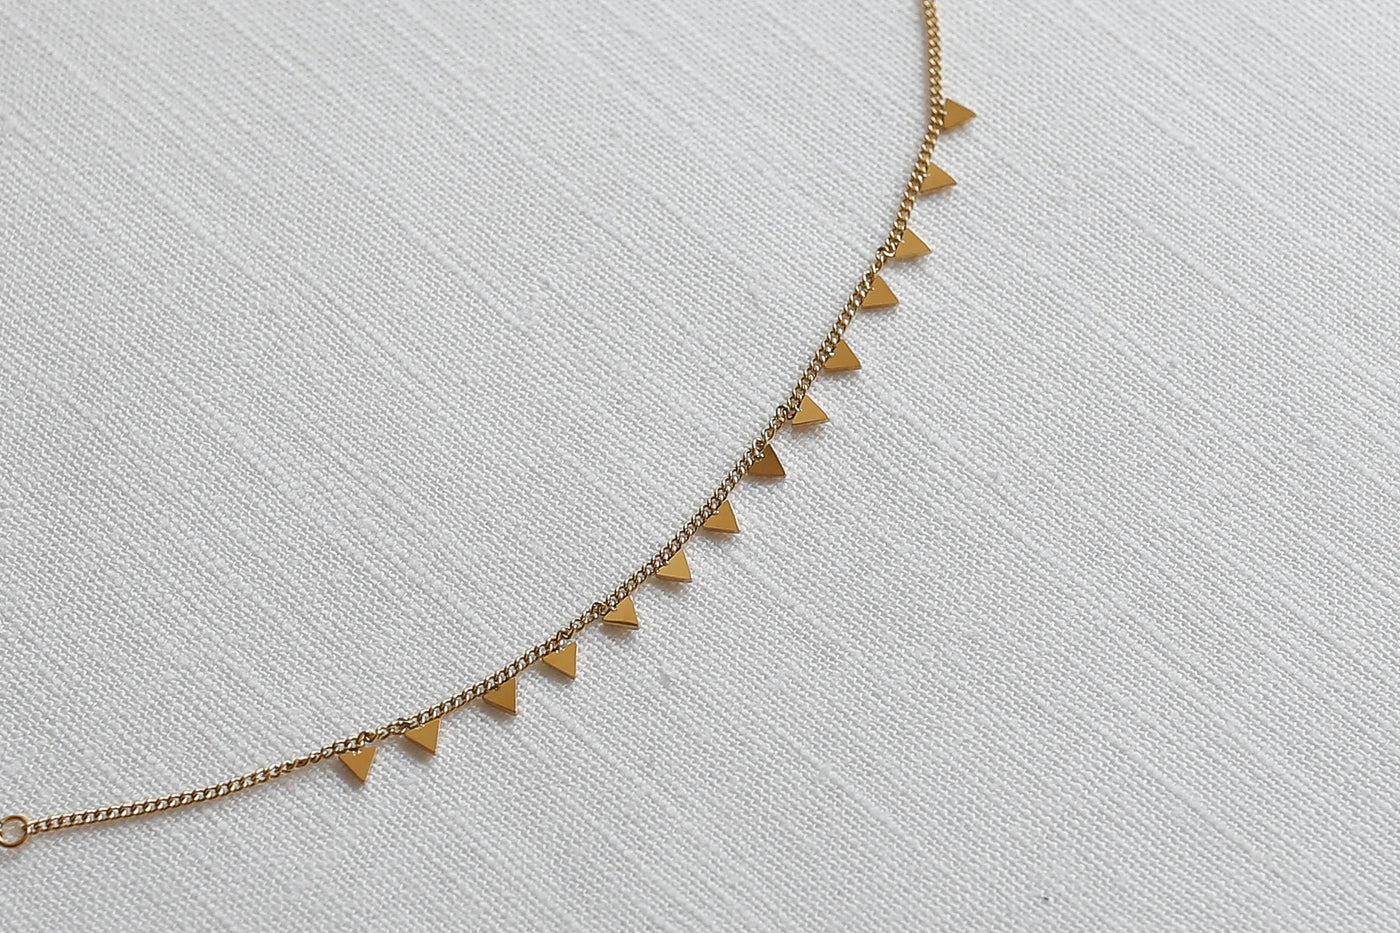 Armband mit Dreieck Plättchen Anhängern und verstellbarer Länge in Gold platziert auf Leinen Stoff.